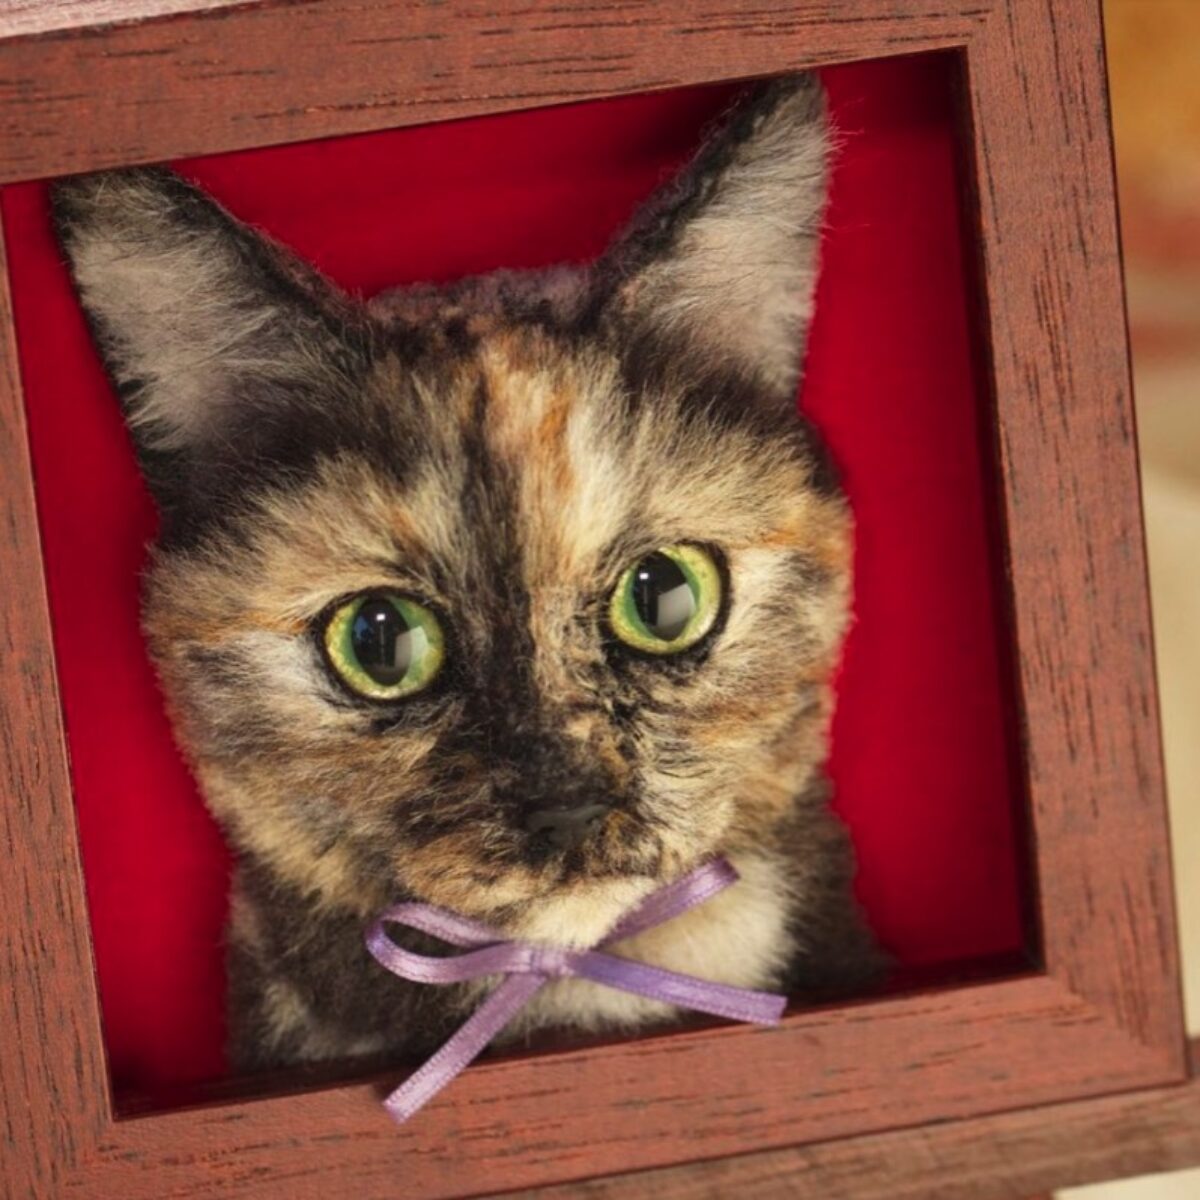 Artista japonesa faz retratos de gatos realistas em 3D, Comportamento